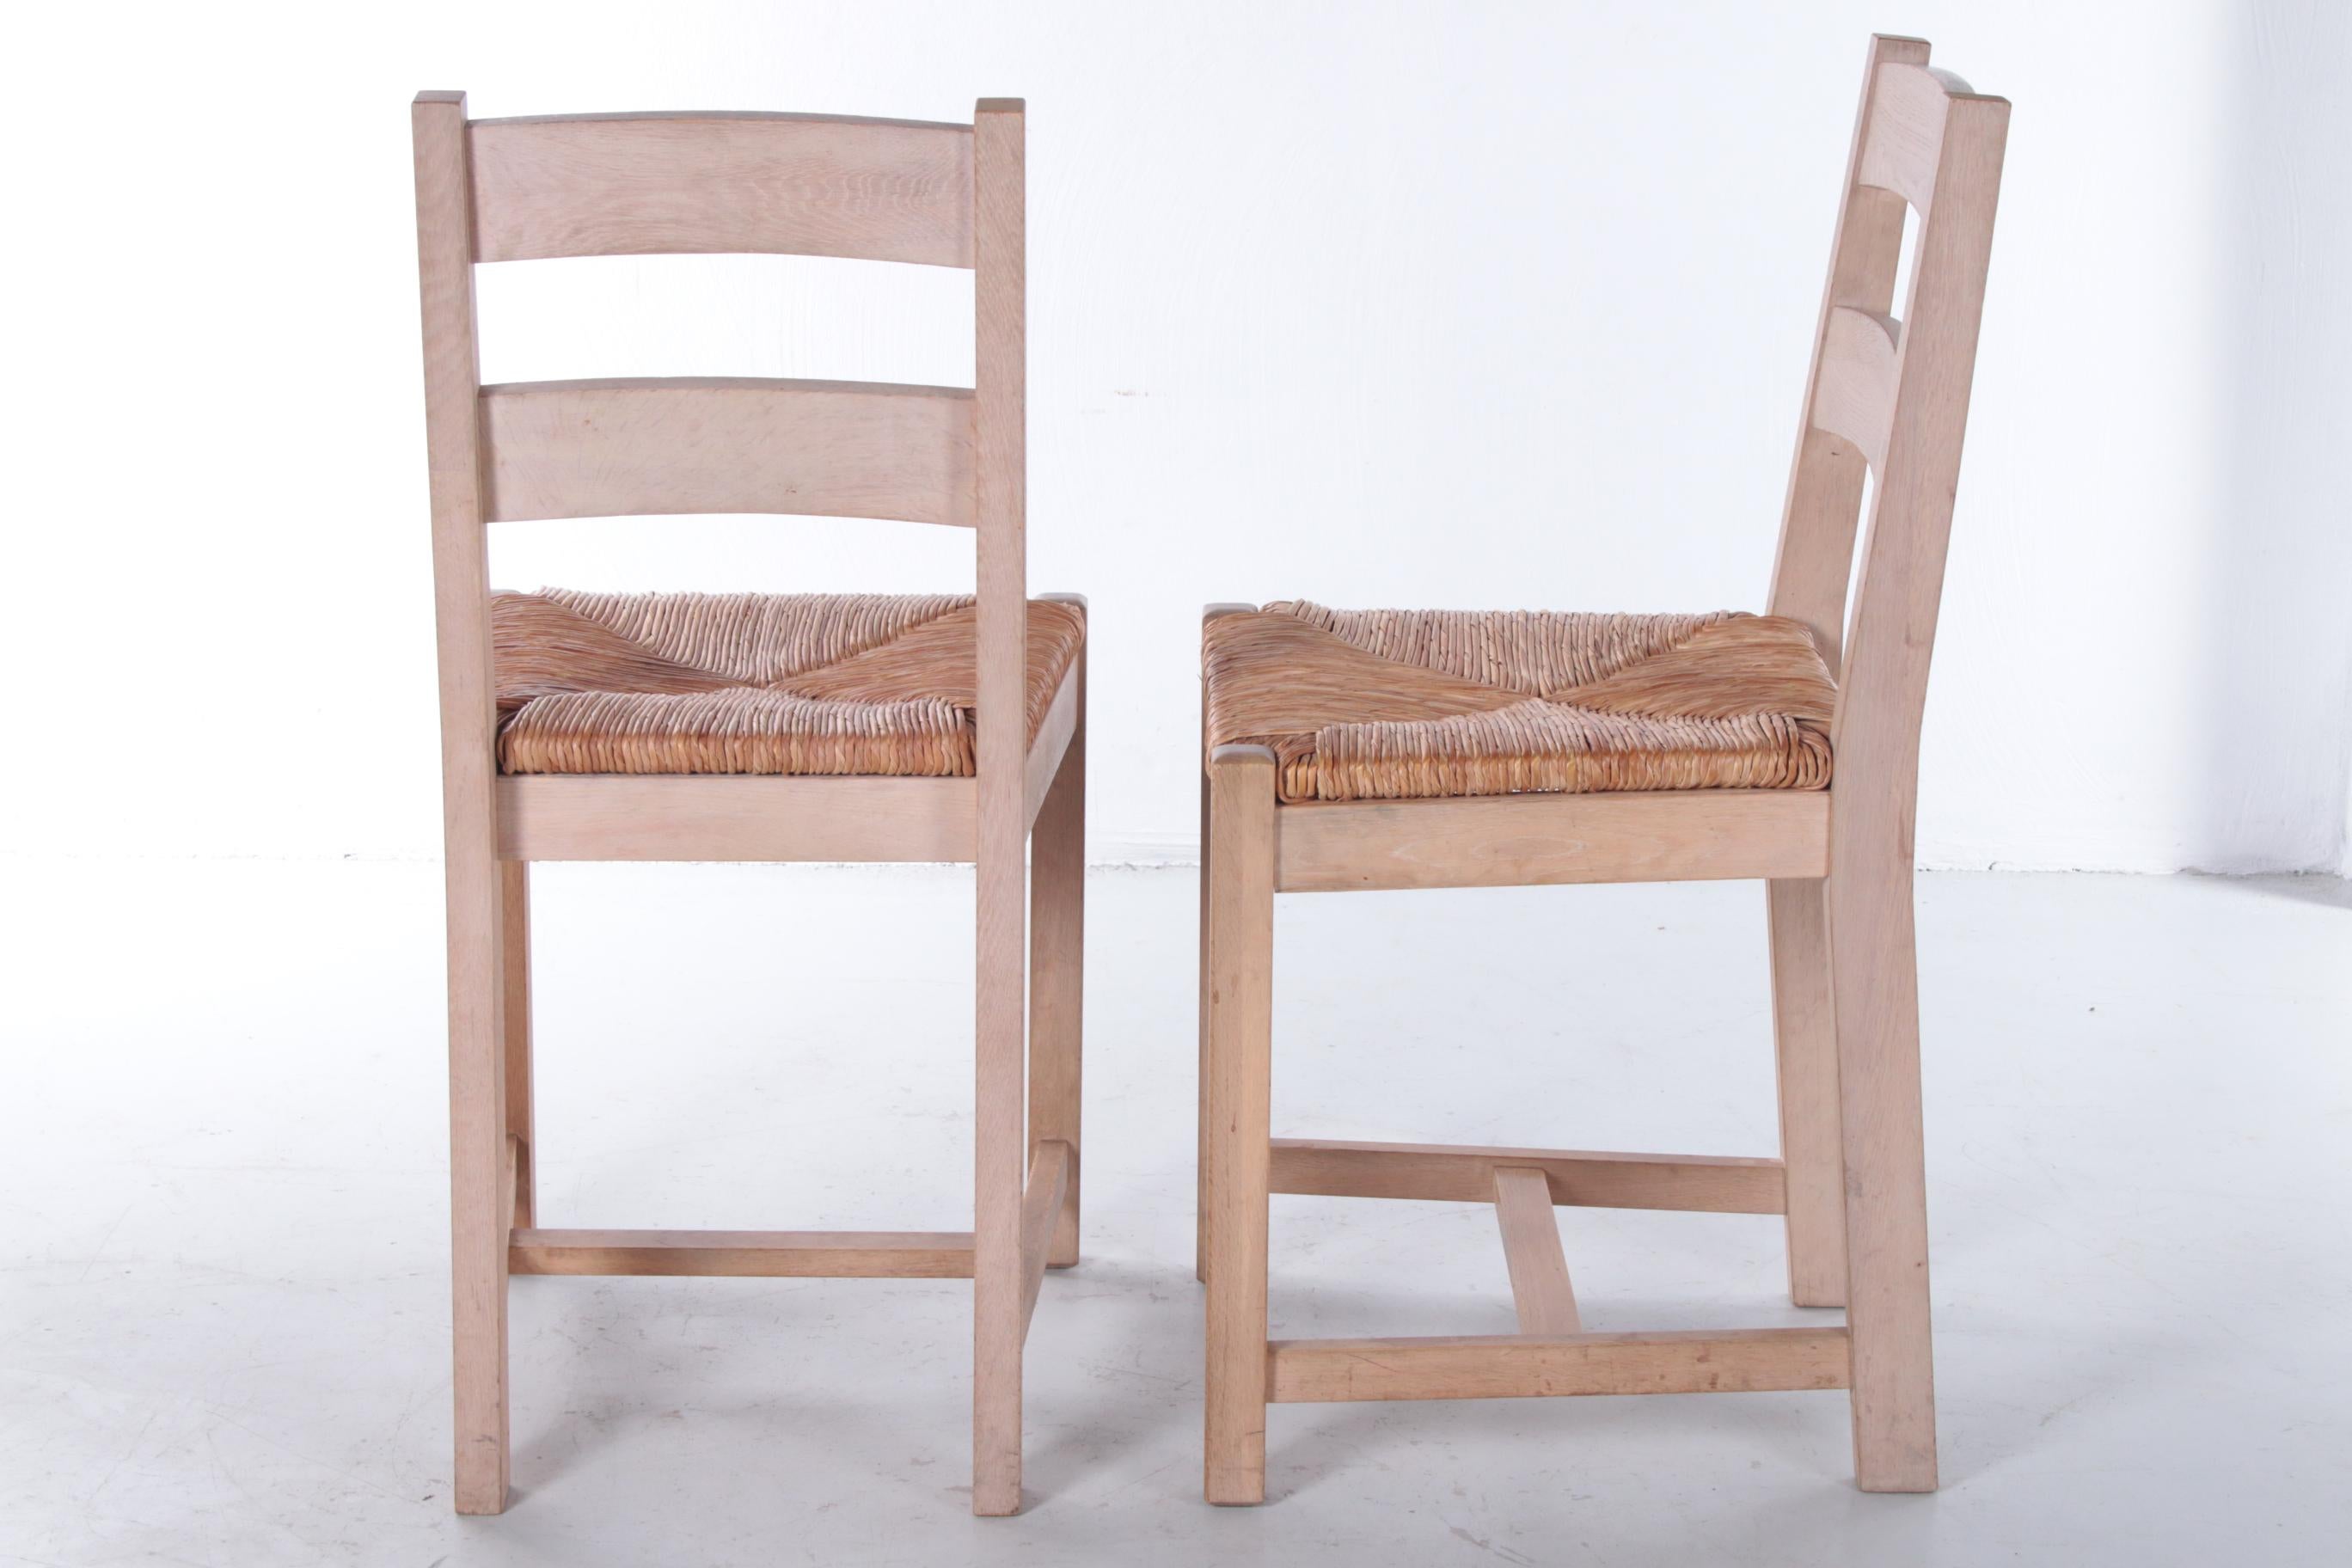 70s kitchen chairs